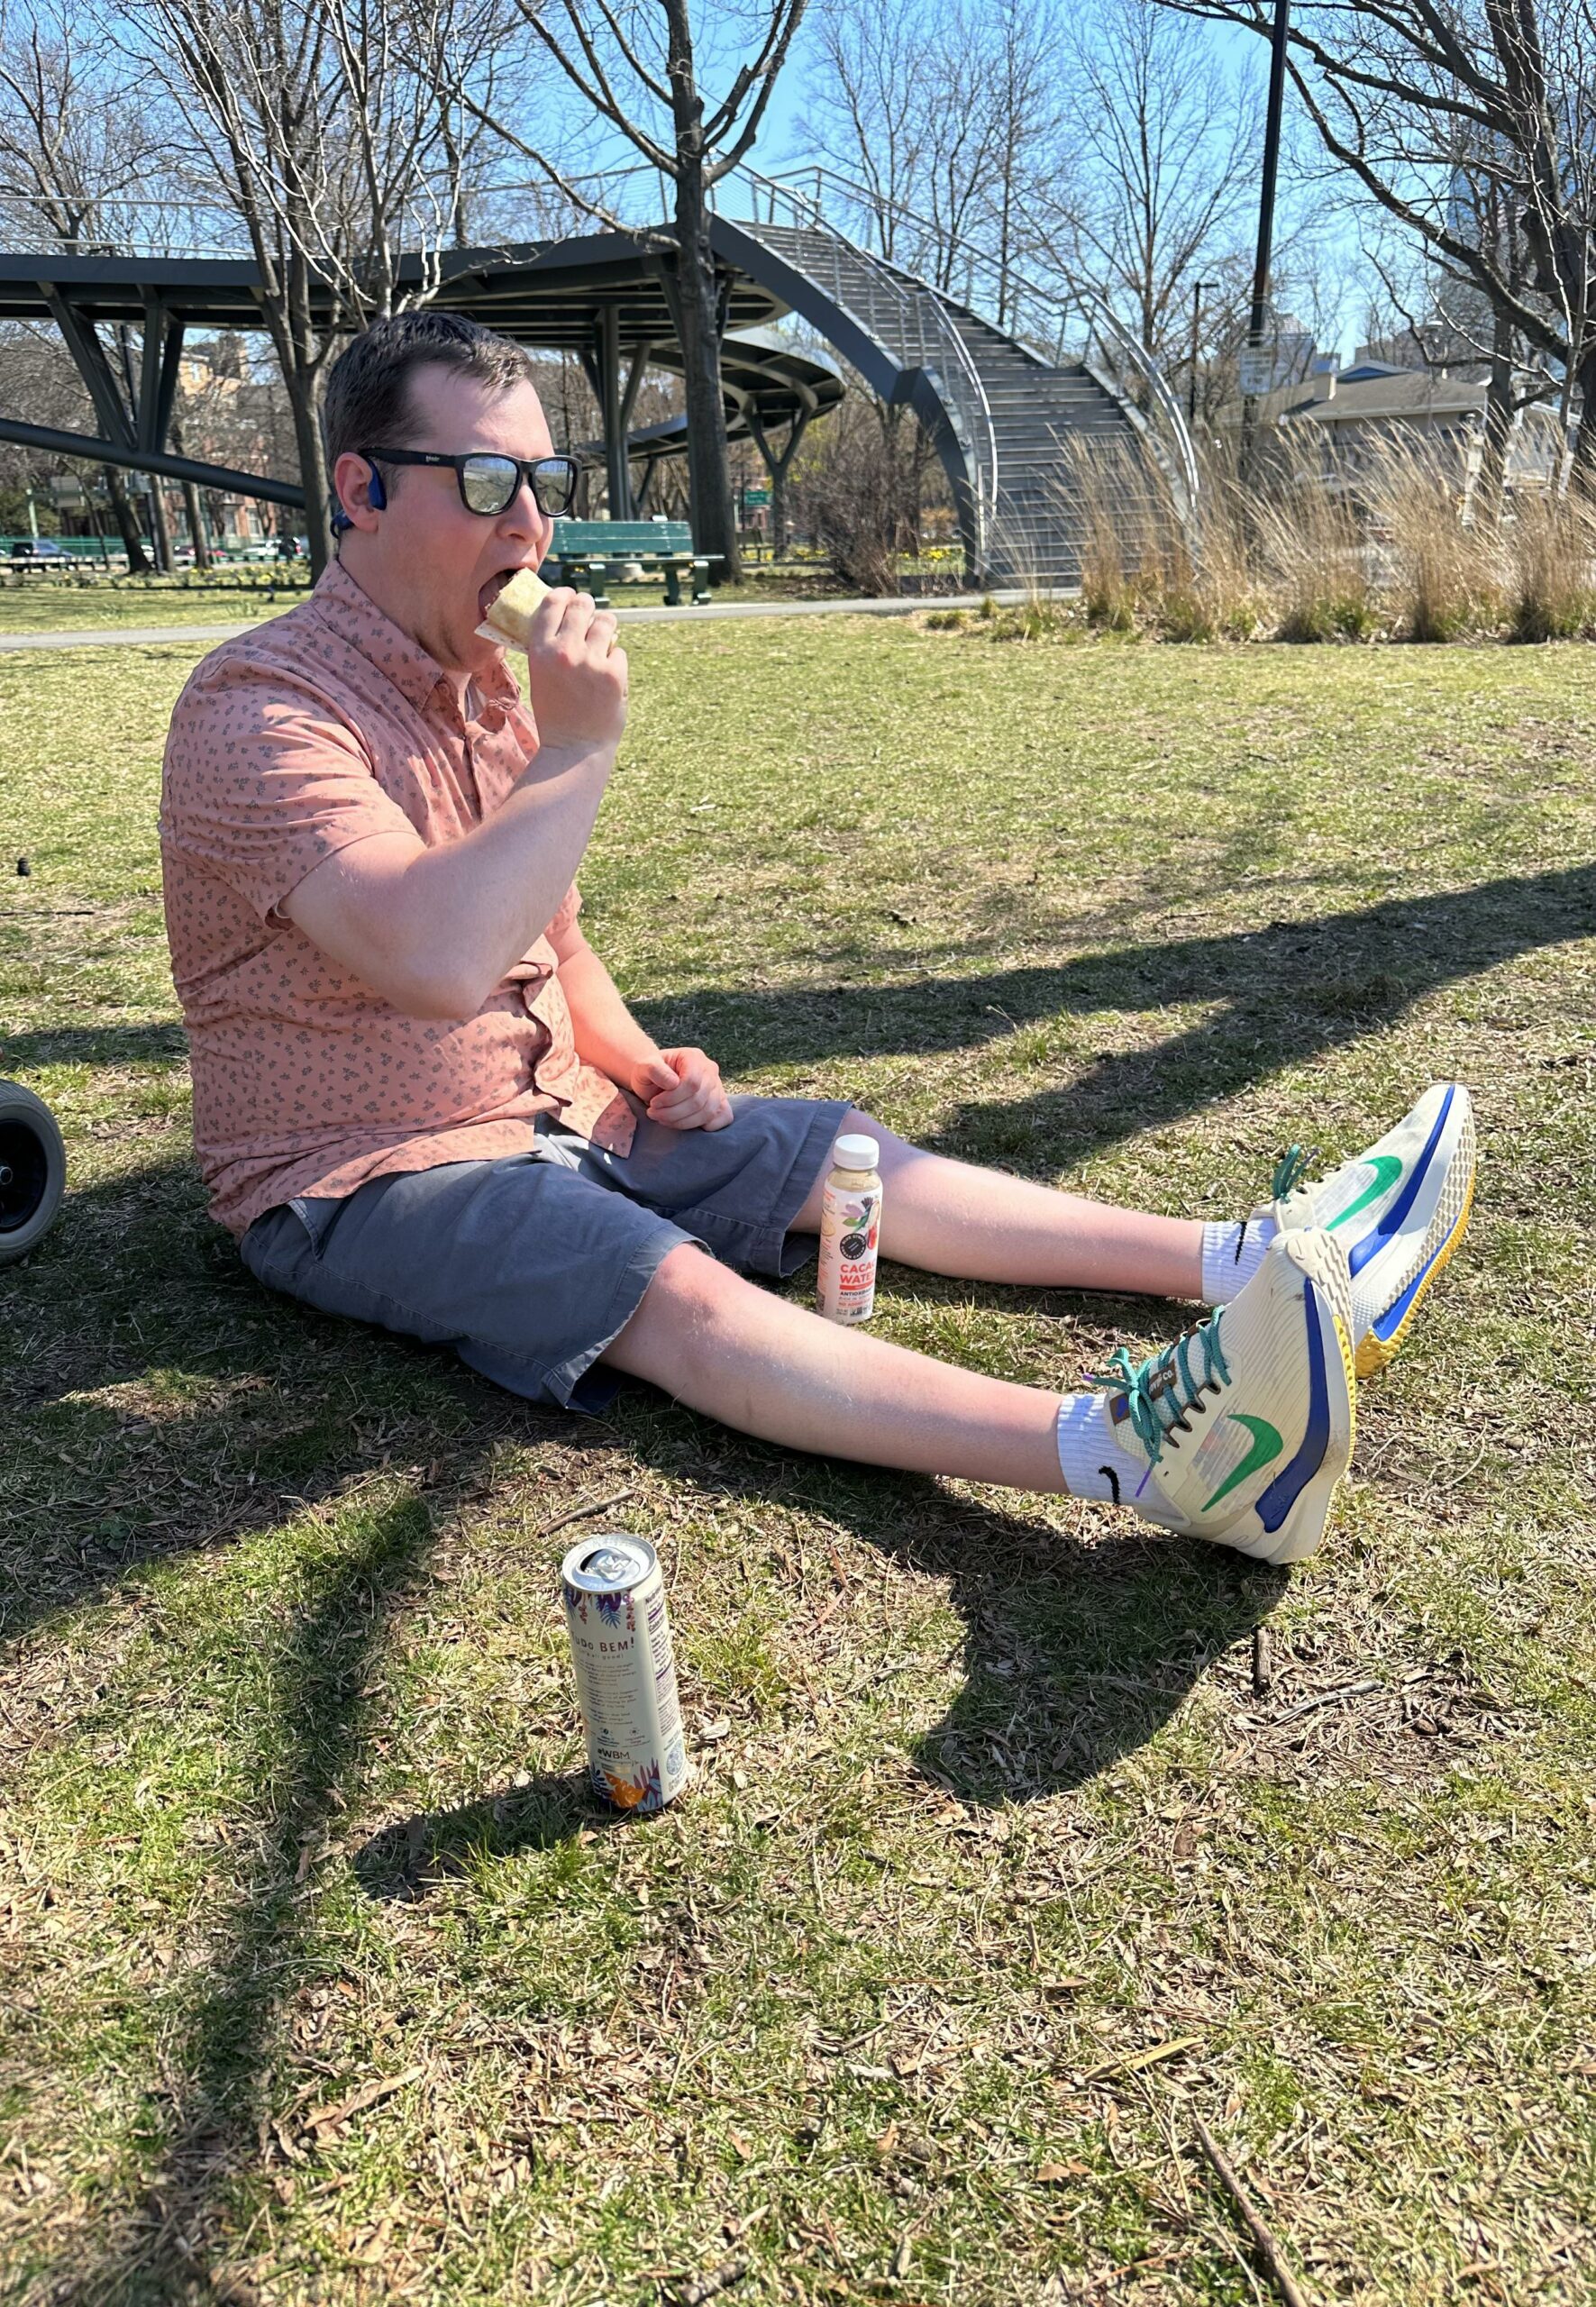 Jake Haendel eating ice cream in the park